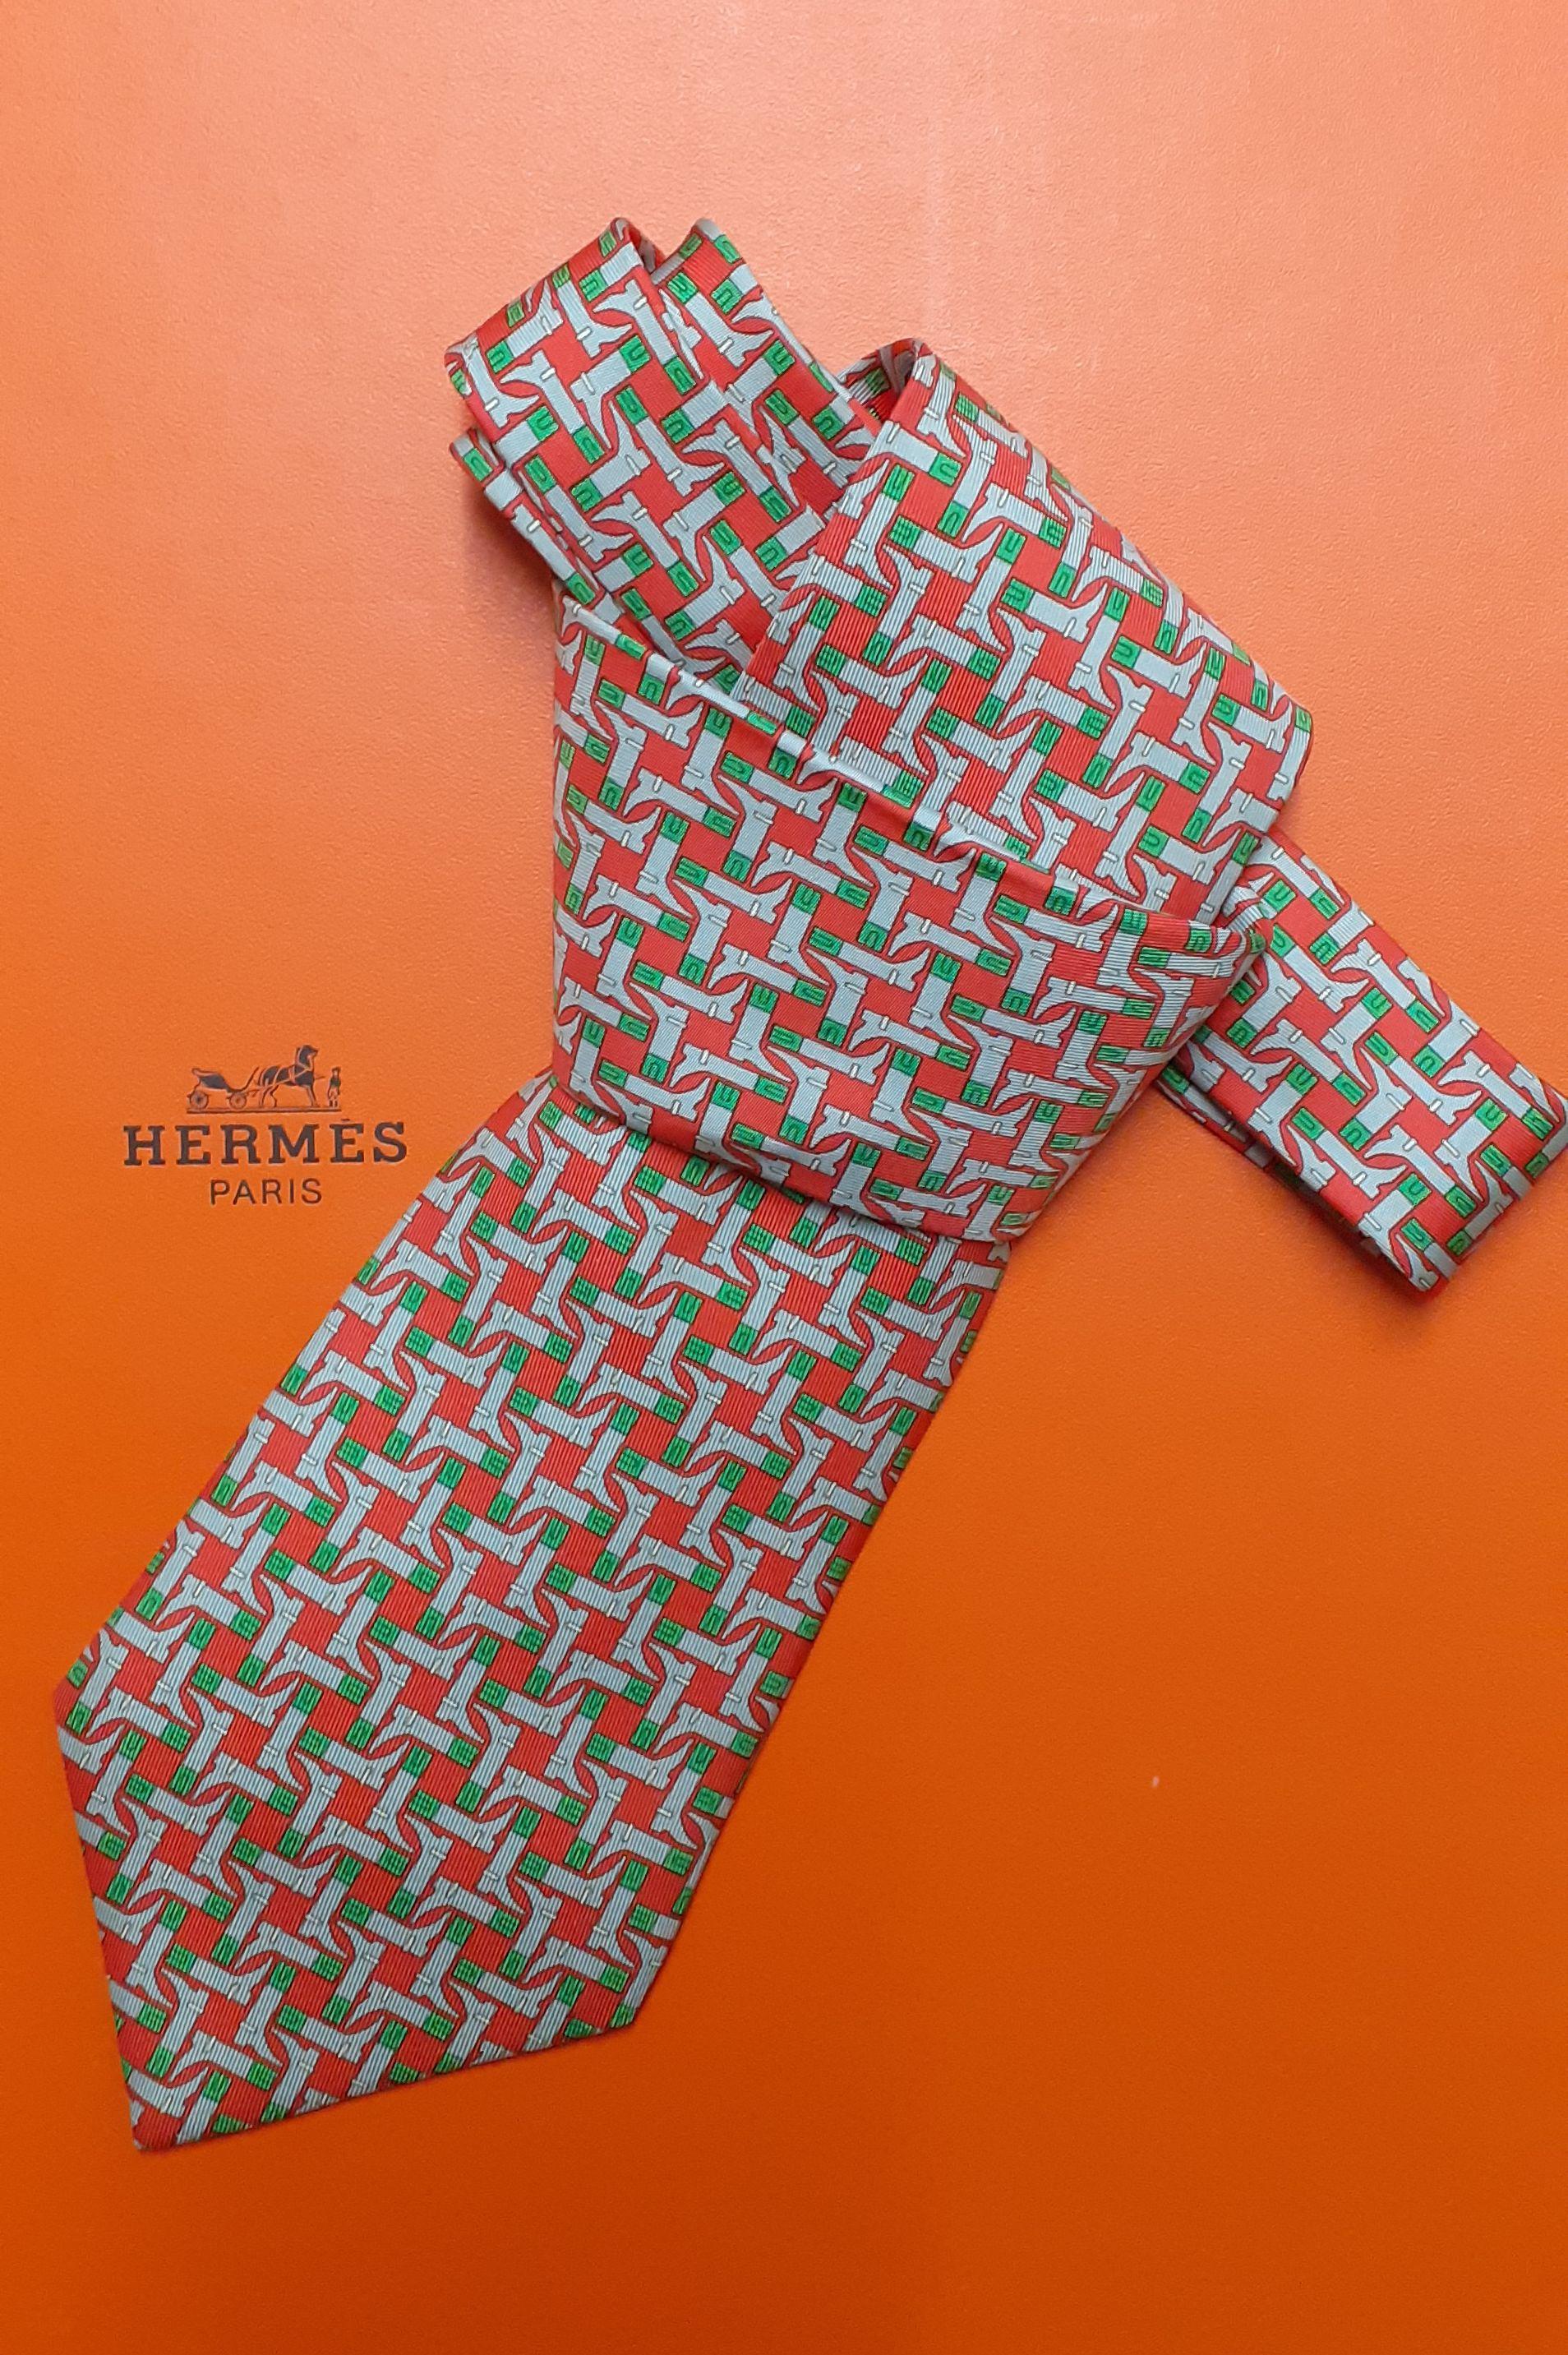 Cravate Hermès authentique et rare

Fabriqué spécialement par Hermès pour l'Italie, pour célébrer les 150 ans de l'unification italienne.

Imprimer : Bottes, petit clin d'œil à la forme de l'Italie

Fabriqué en France

Fabriqué en 100% soie

Les